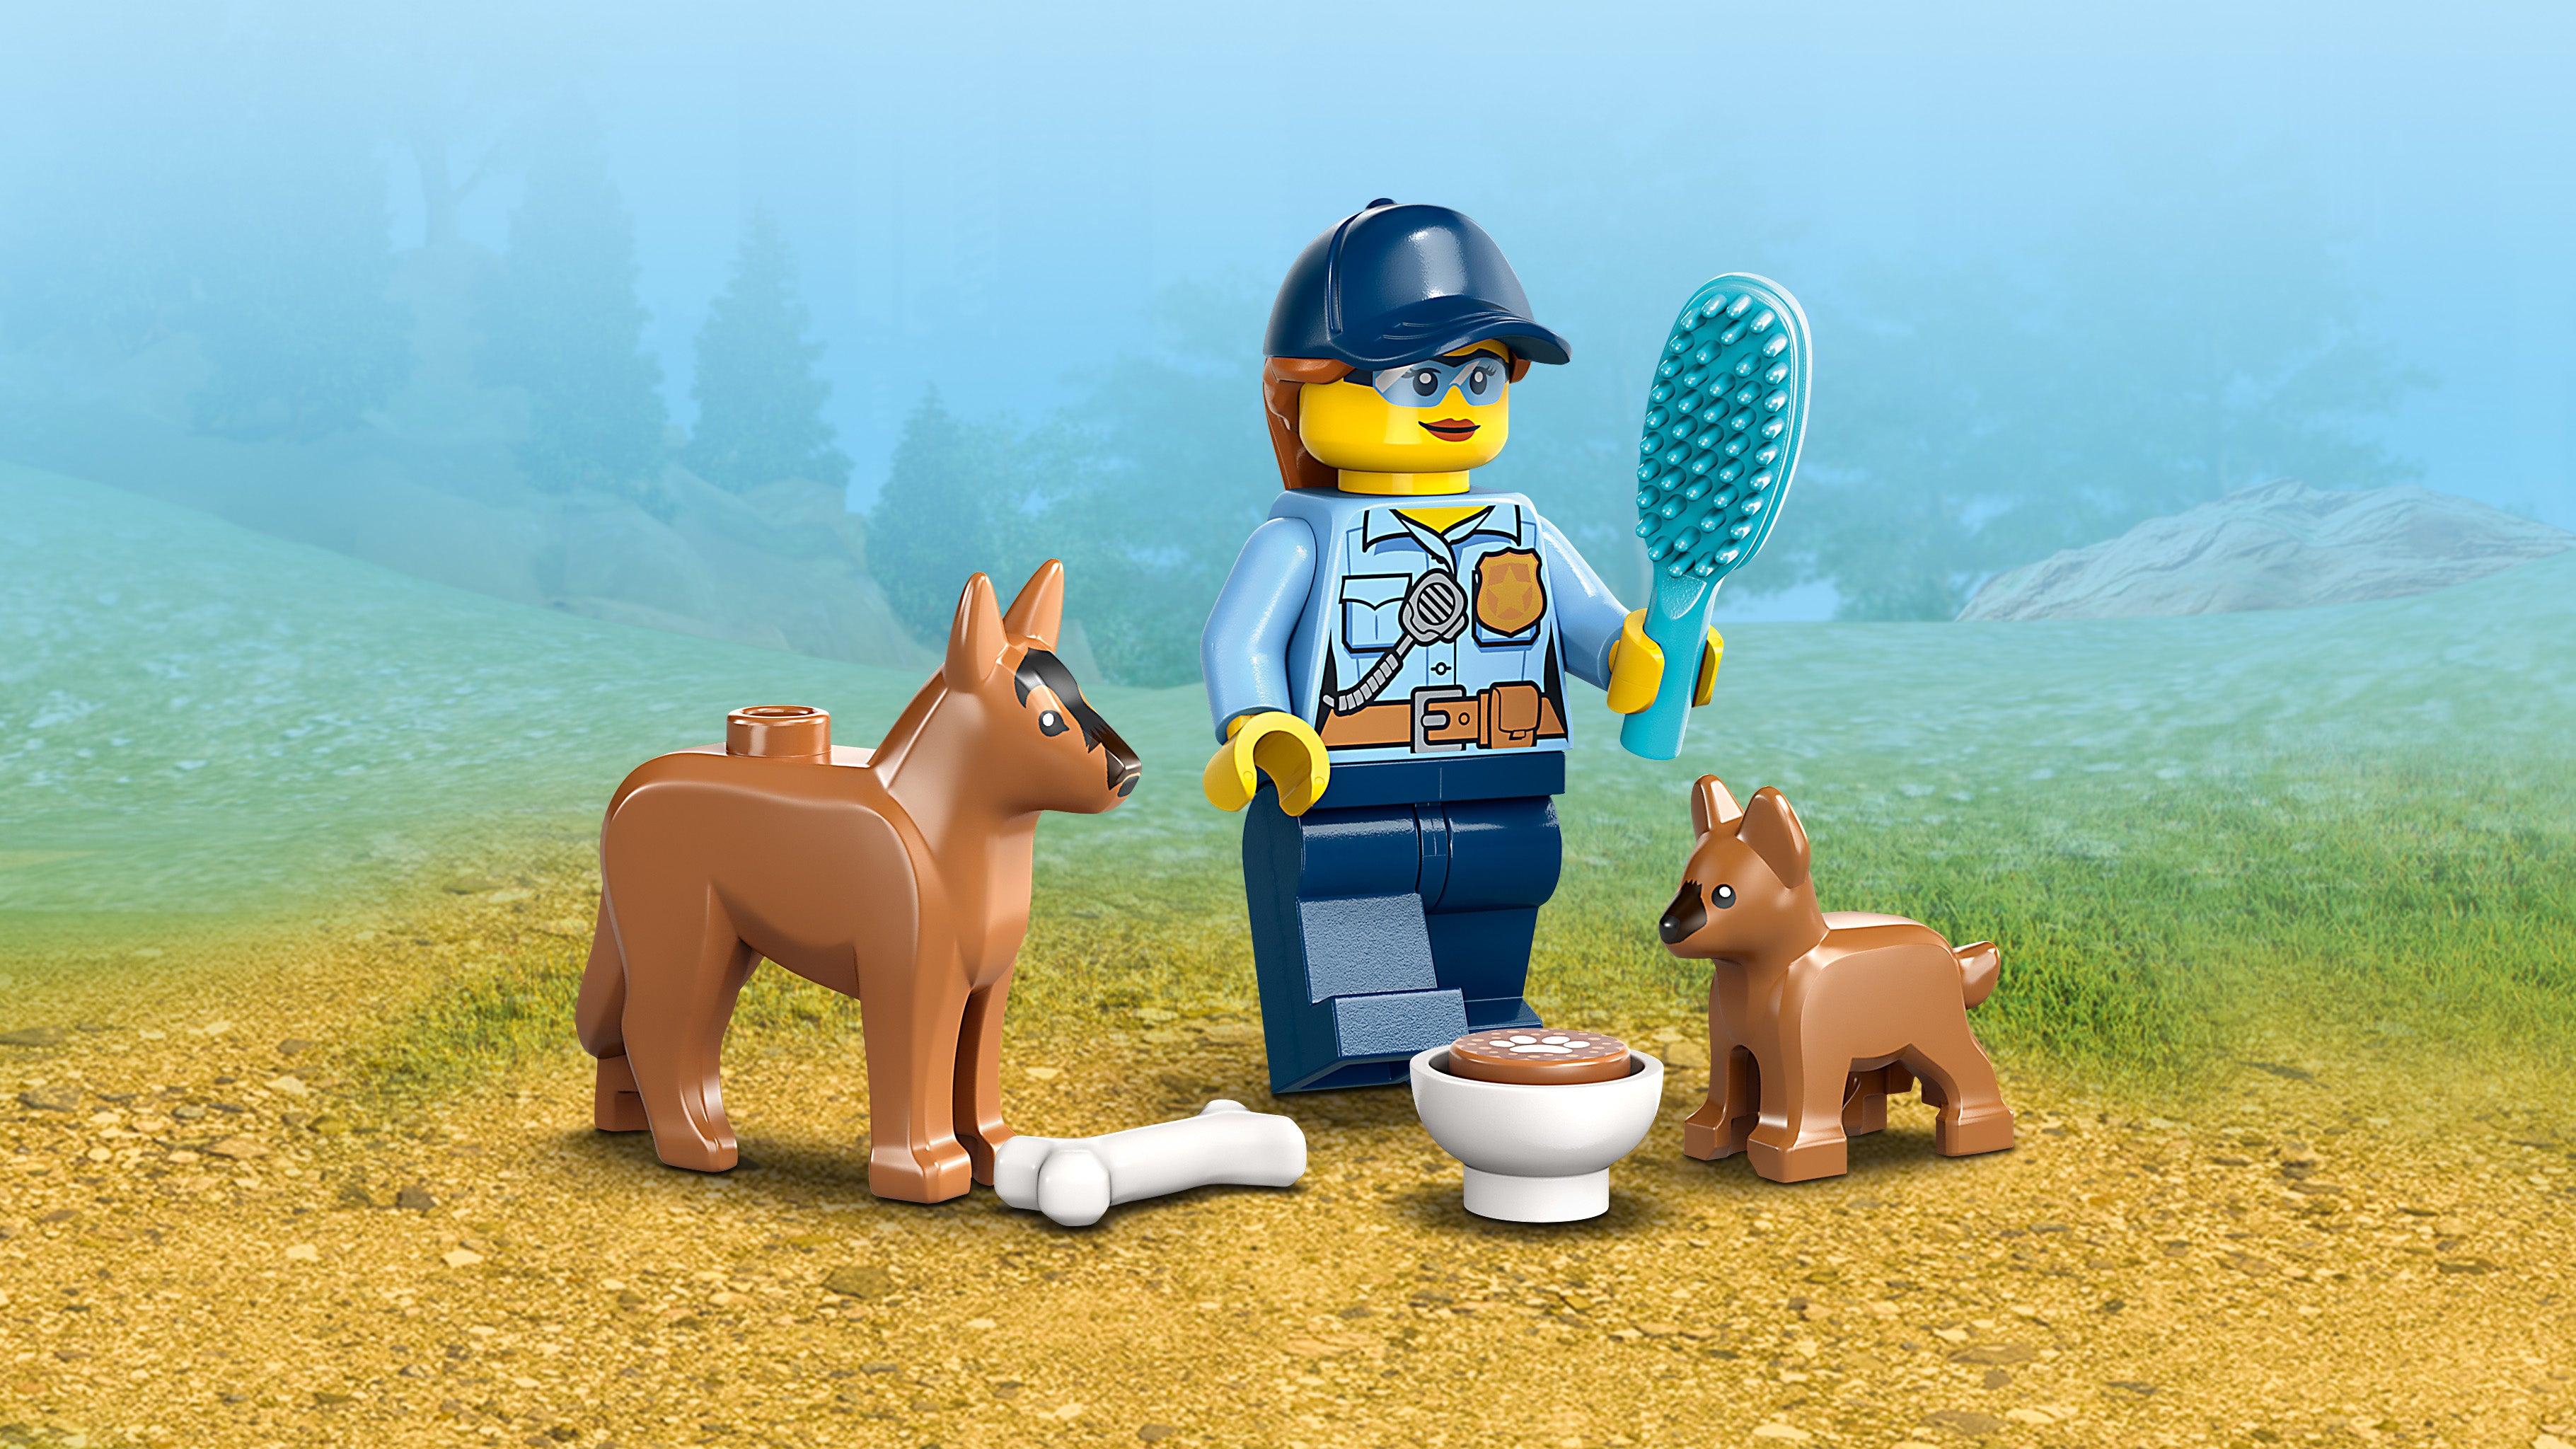 Lego 60369 Mobile Police Dog Training Set & 4x4